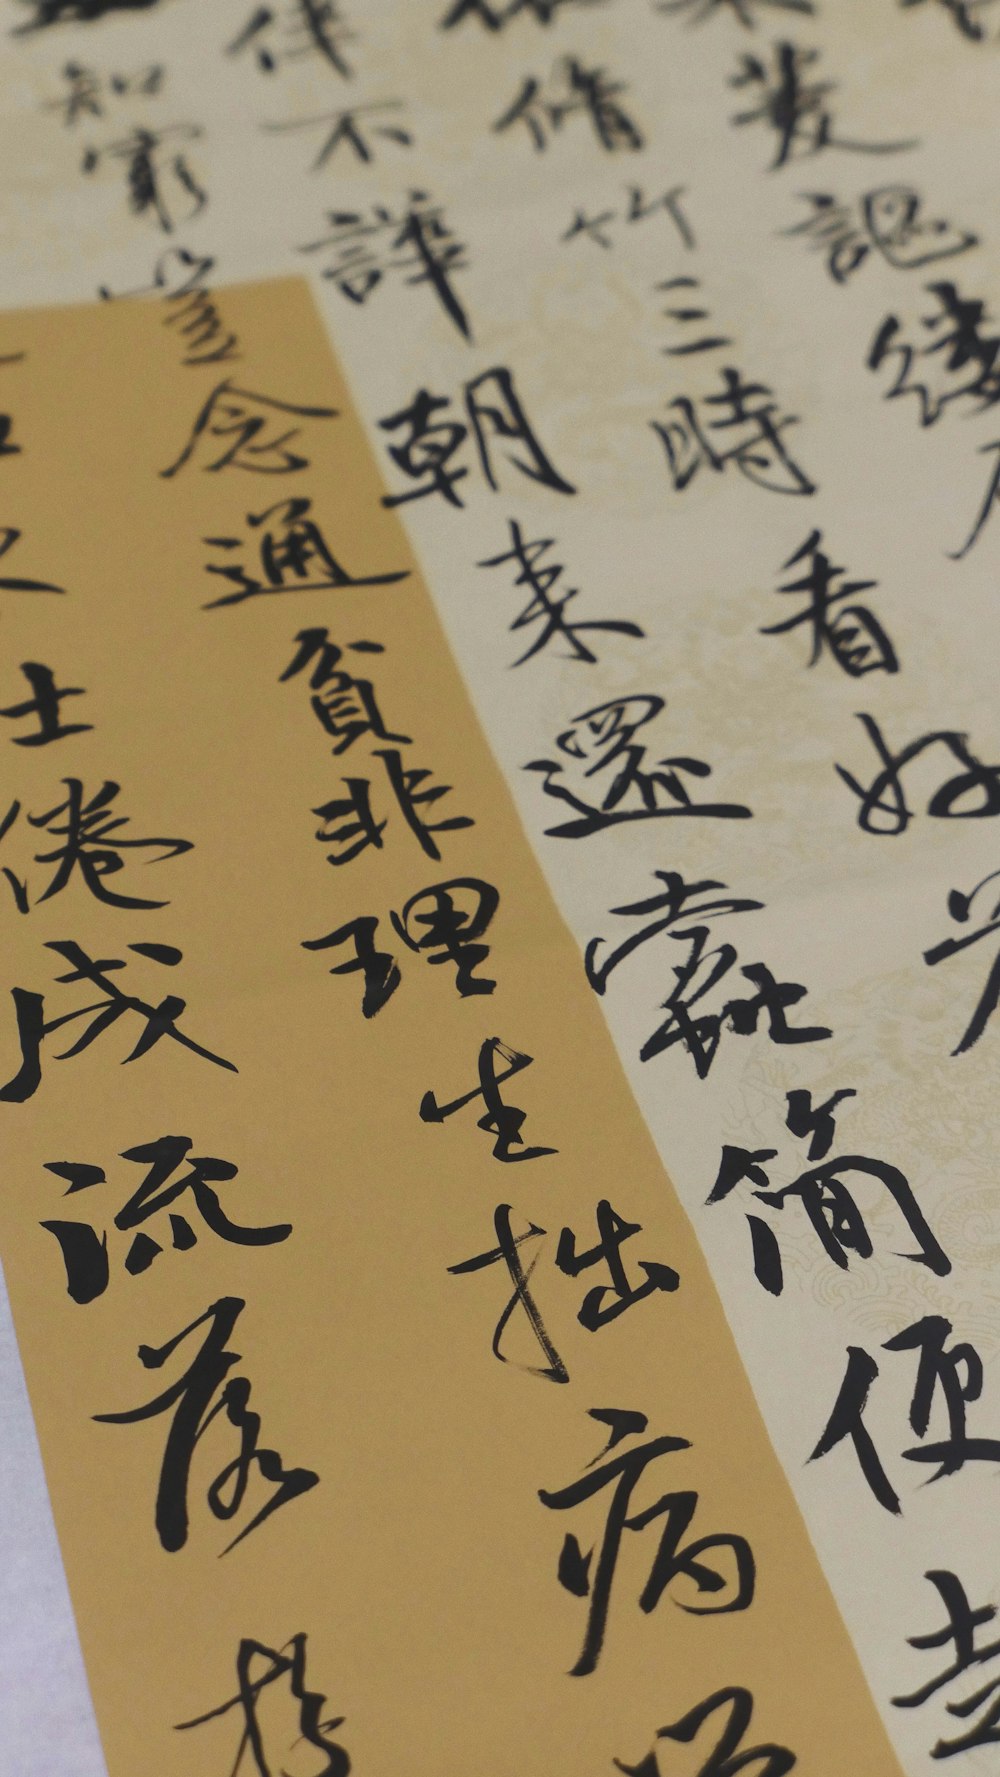 Texte de l’extrait en kanji